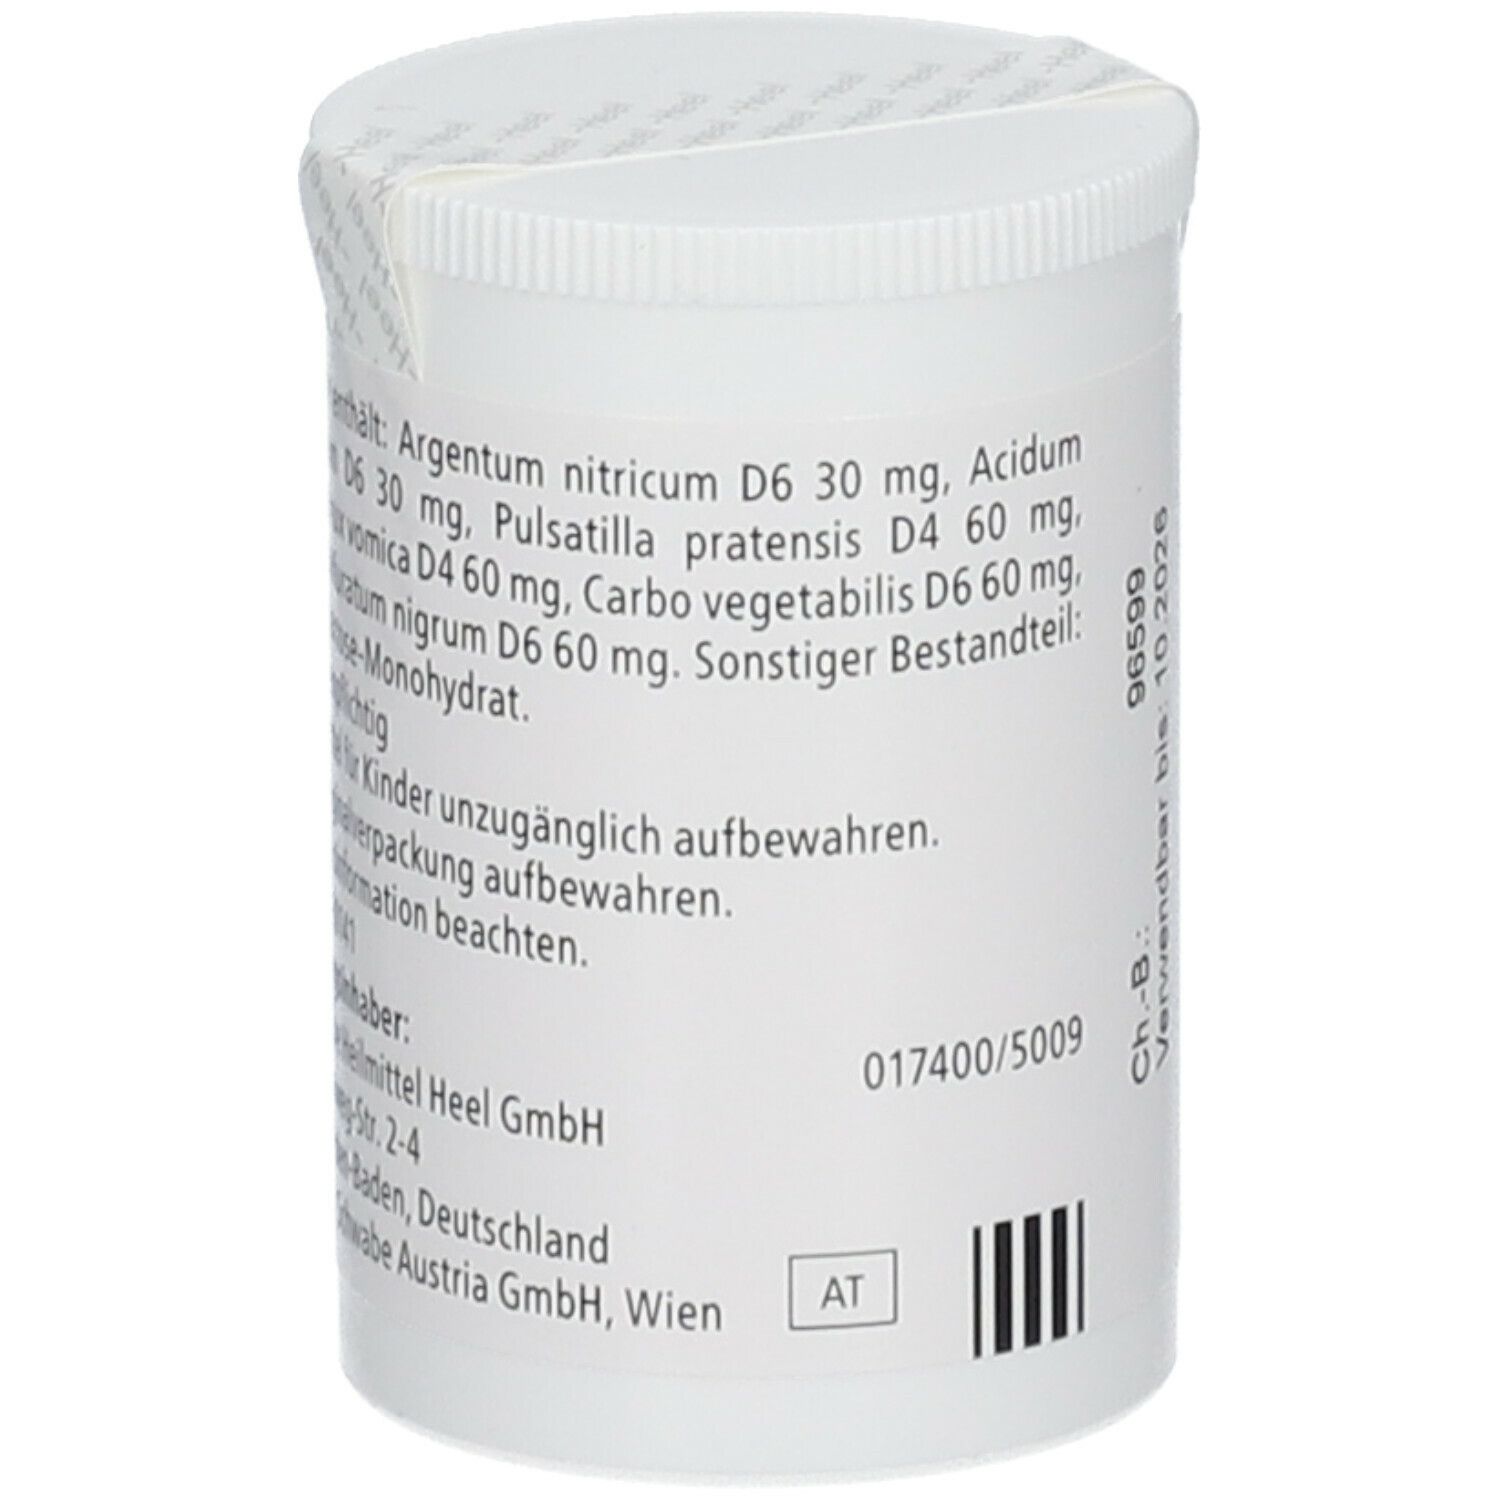 Gastricumeel®-Tabletten